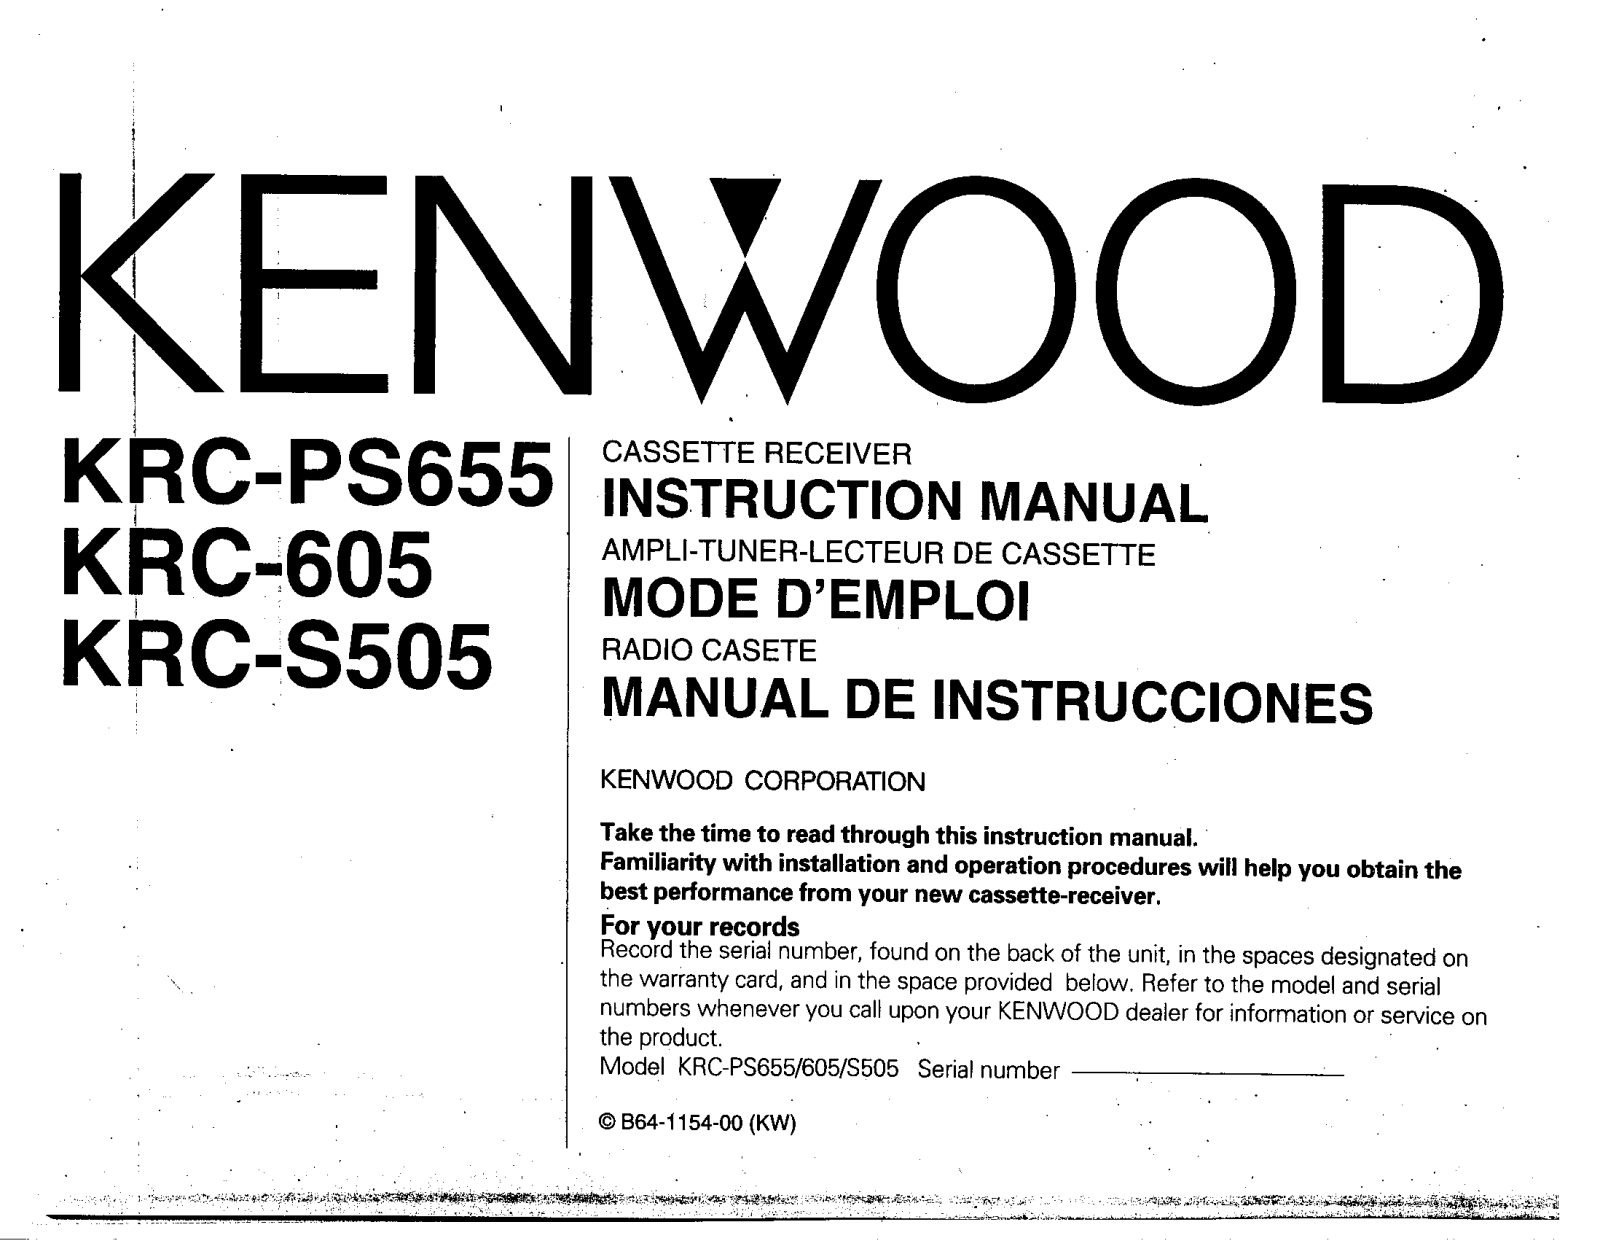 Kenwood KRC-S505, KRC-PS655, KRC-605 Owner's Manual